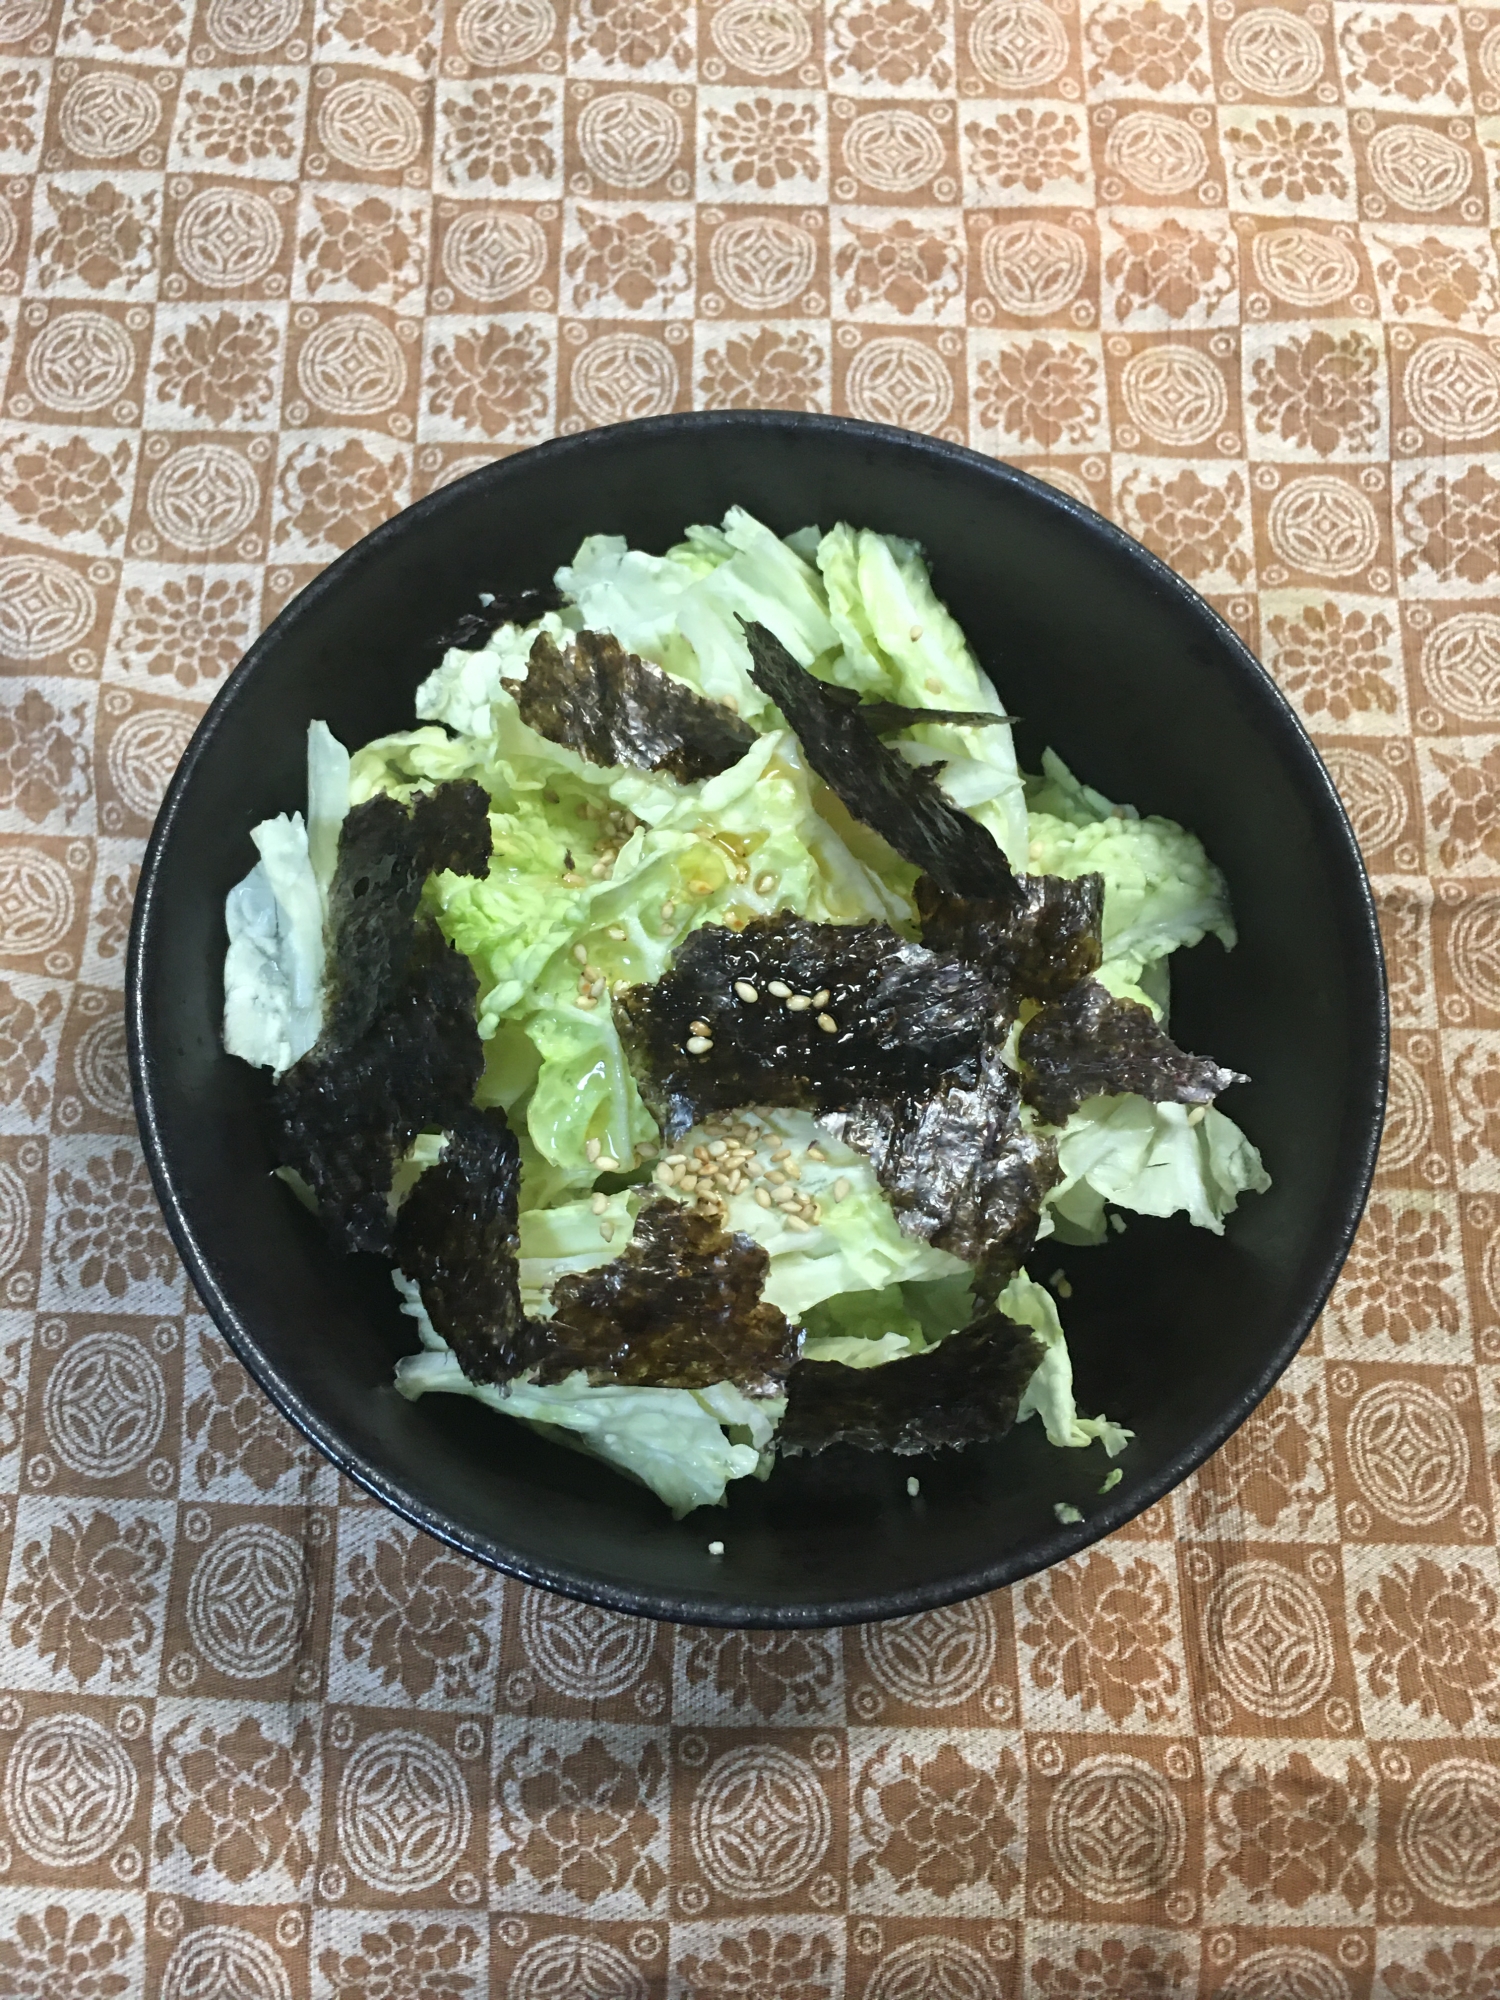 ちぎって混ぜるだけ⭐︎白菜と海苔のチョレギサラダ